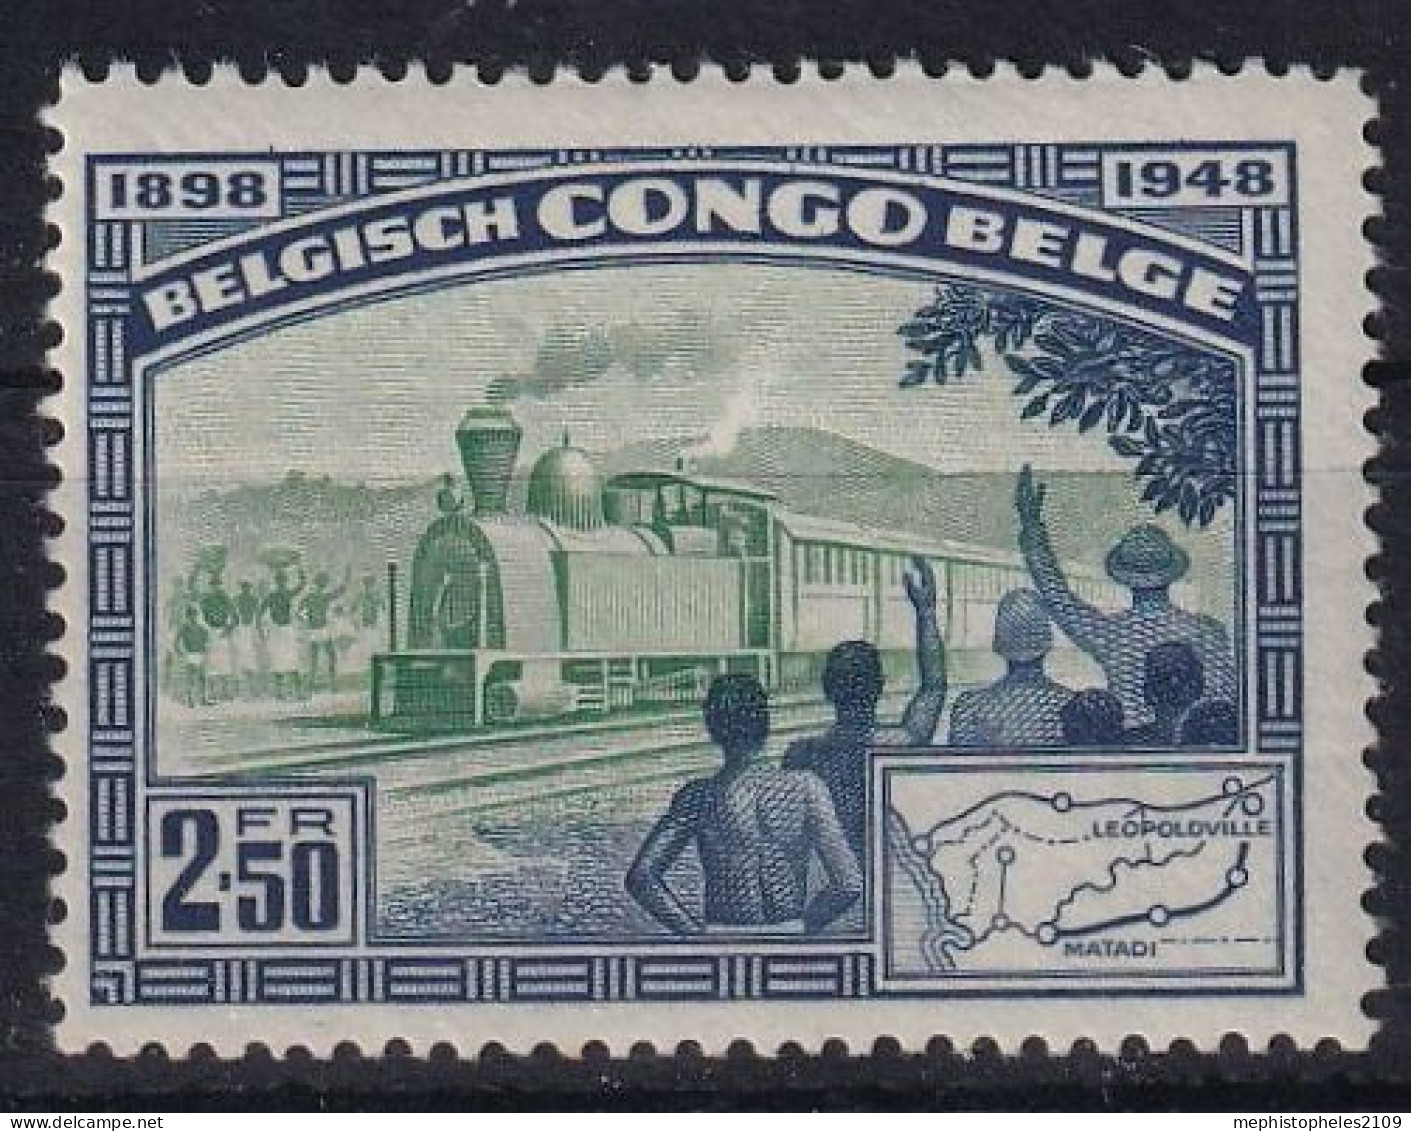 BELGISCH-CONGO 1948 - MLH - Mi 289 - Nuevos